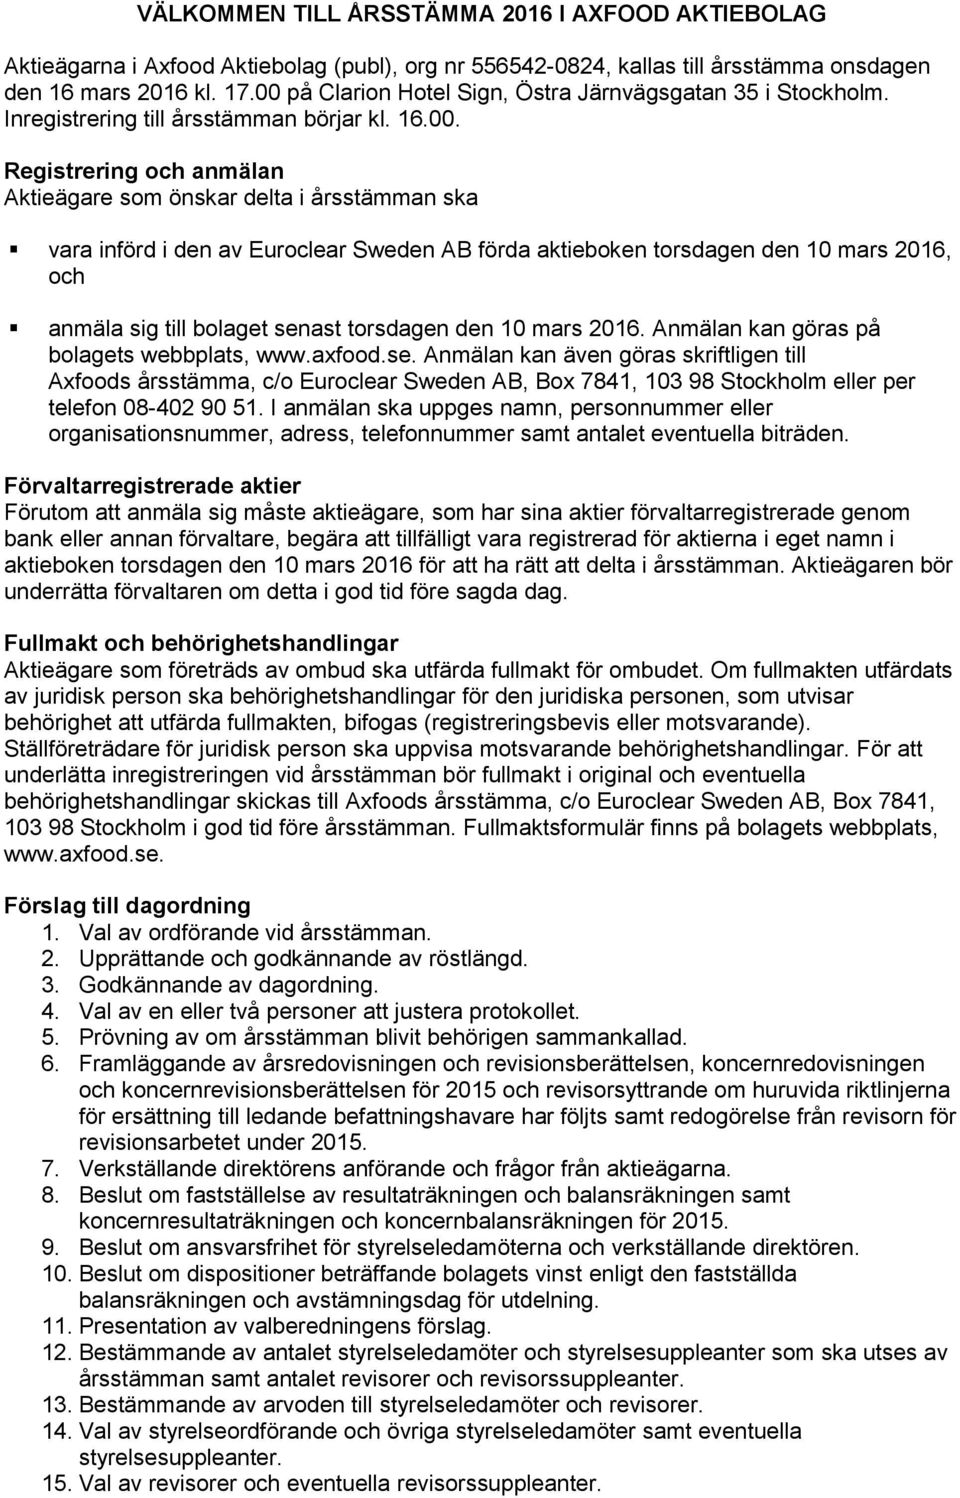 av Euroclear Sweden AB förda aktieboken torsdagen den 10 mars 2016, och anmäla sig till bolaget sen